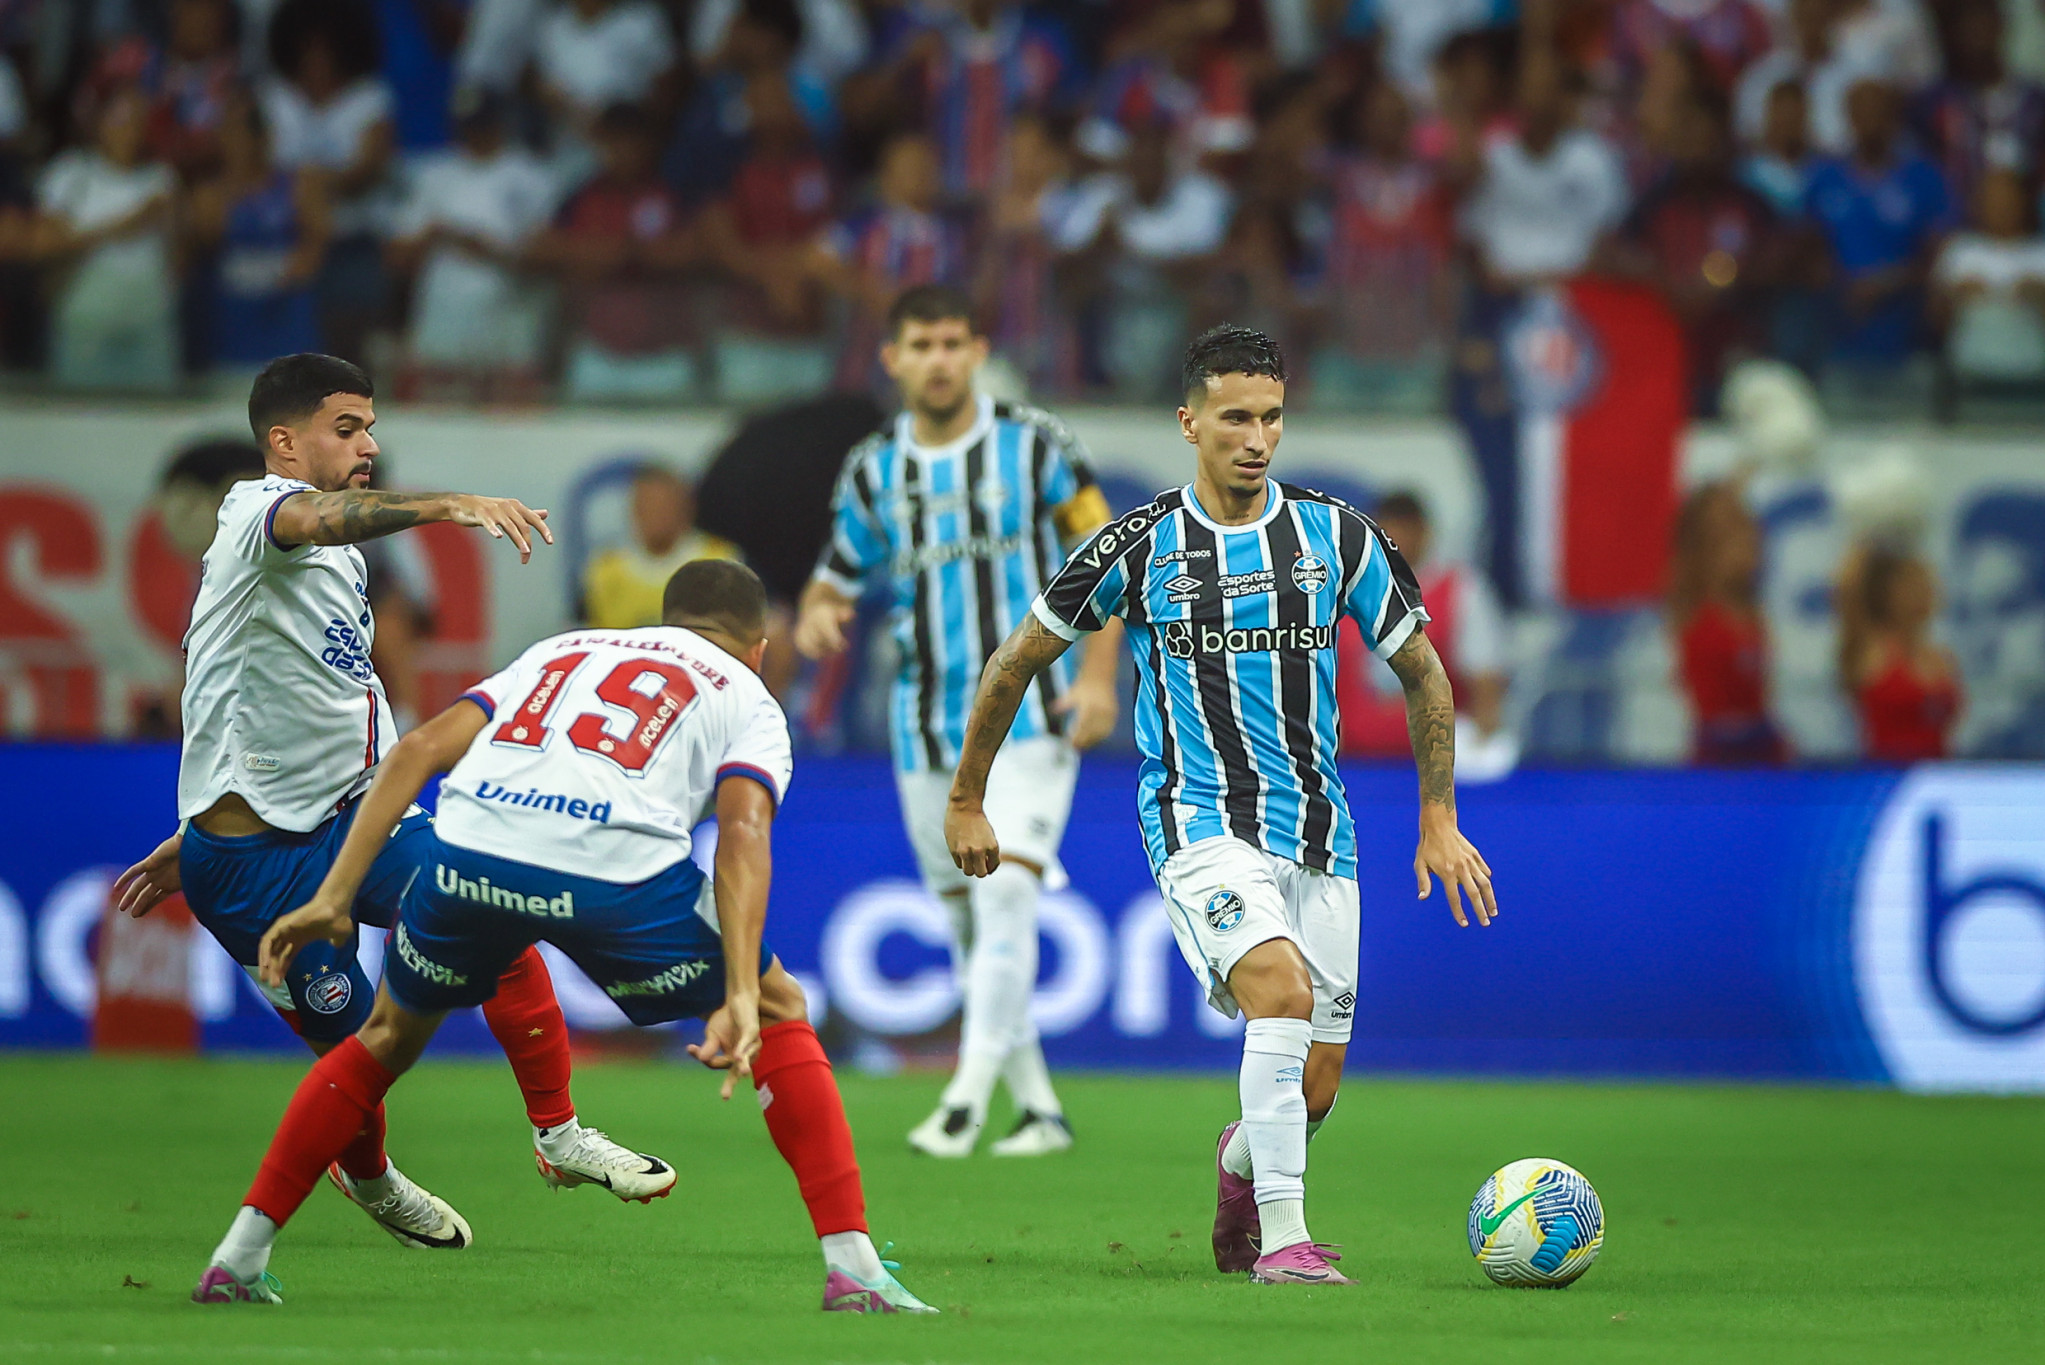 Em jogo marcado por confusão no final, Grêmio perdeu para o Bahia por 1 a 0